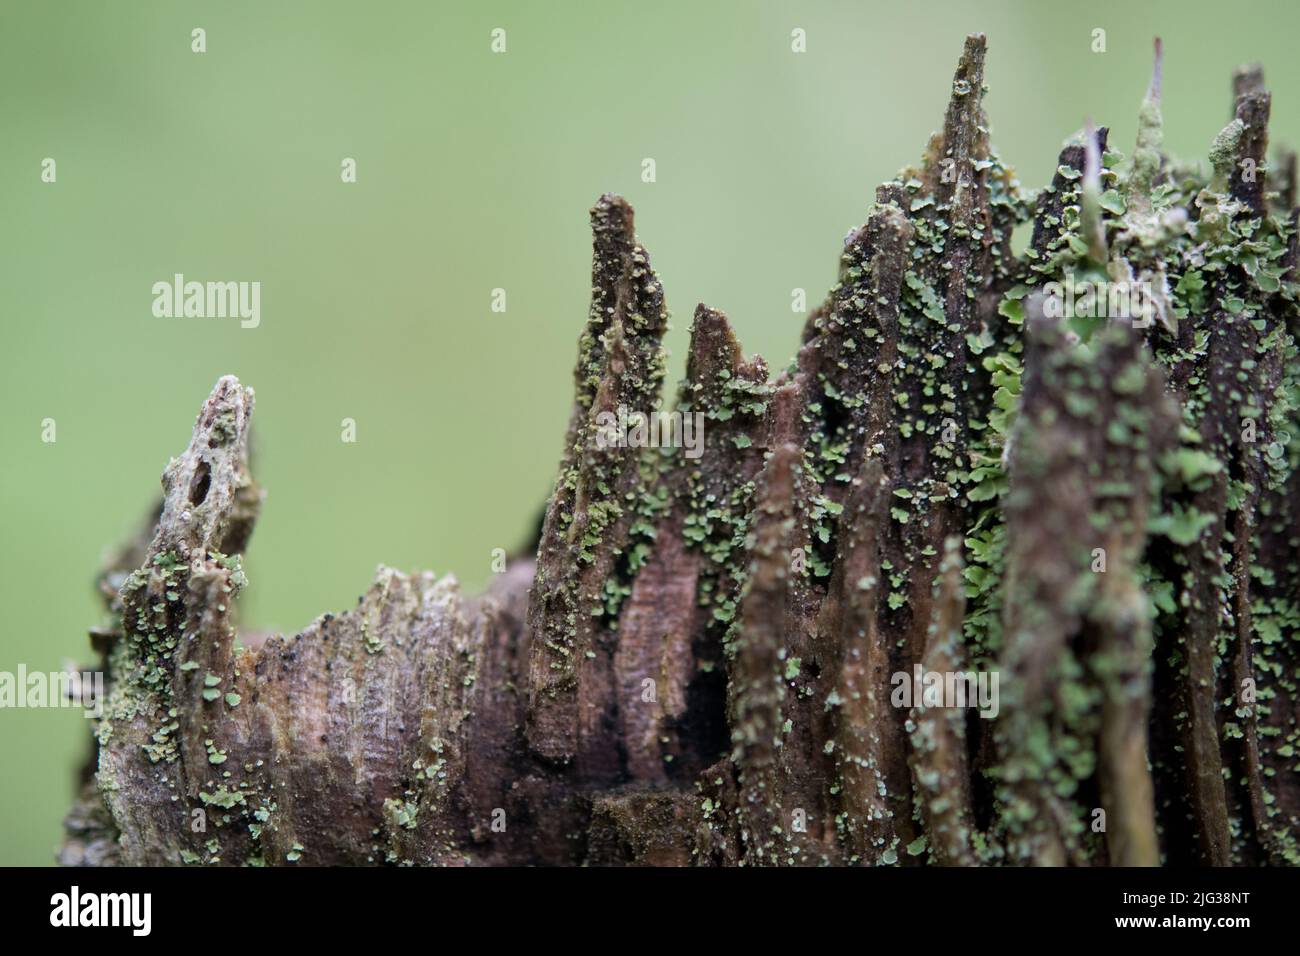 Vieux tronc d'arbre brisé avec de la mousse et du lichen poussant dessus Banque D'Images